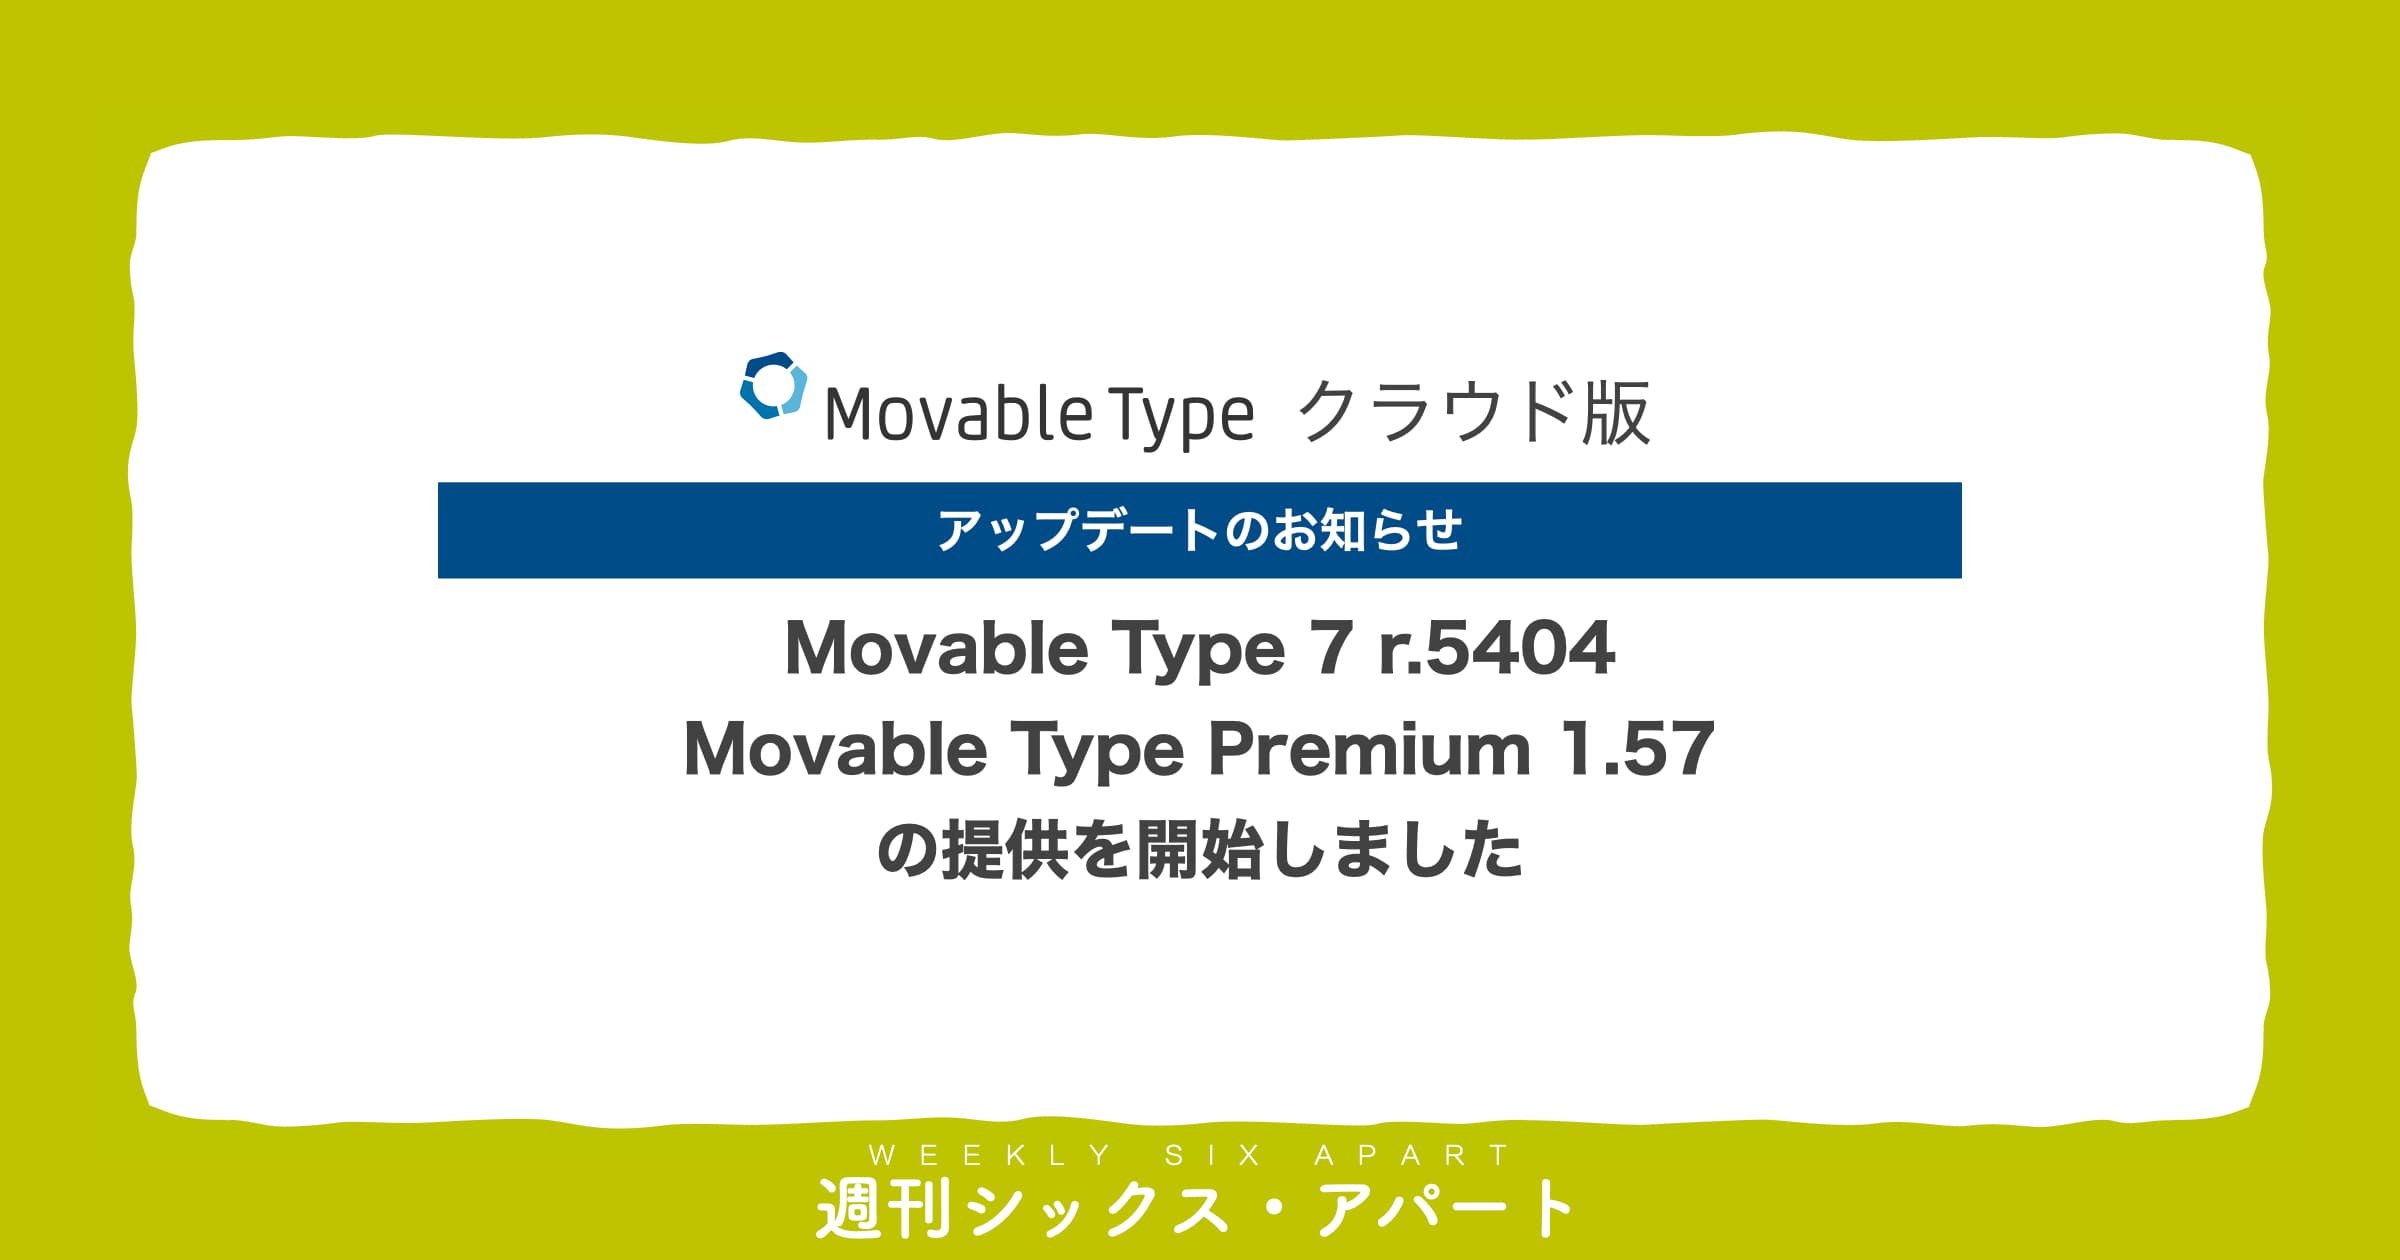 Movable Type 7 r.5404 ならびに Movable Type Premium 1.57 の提供を開始しました（クラウド版のみ） #週刊SA